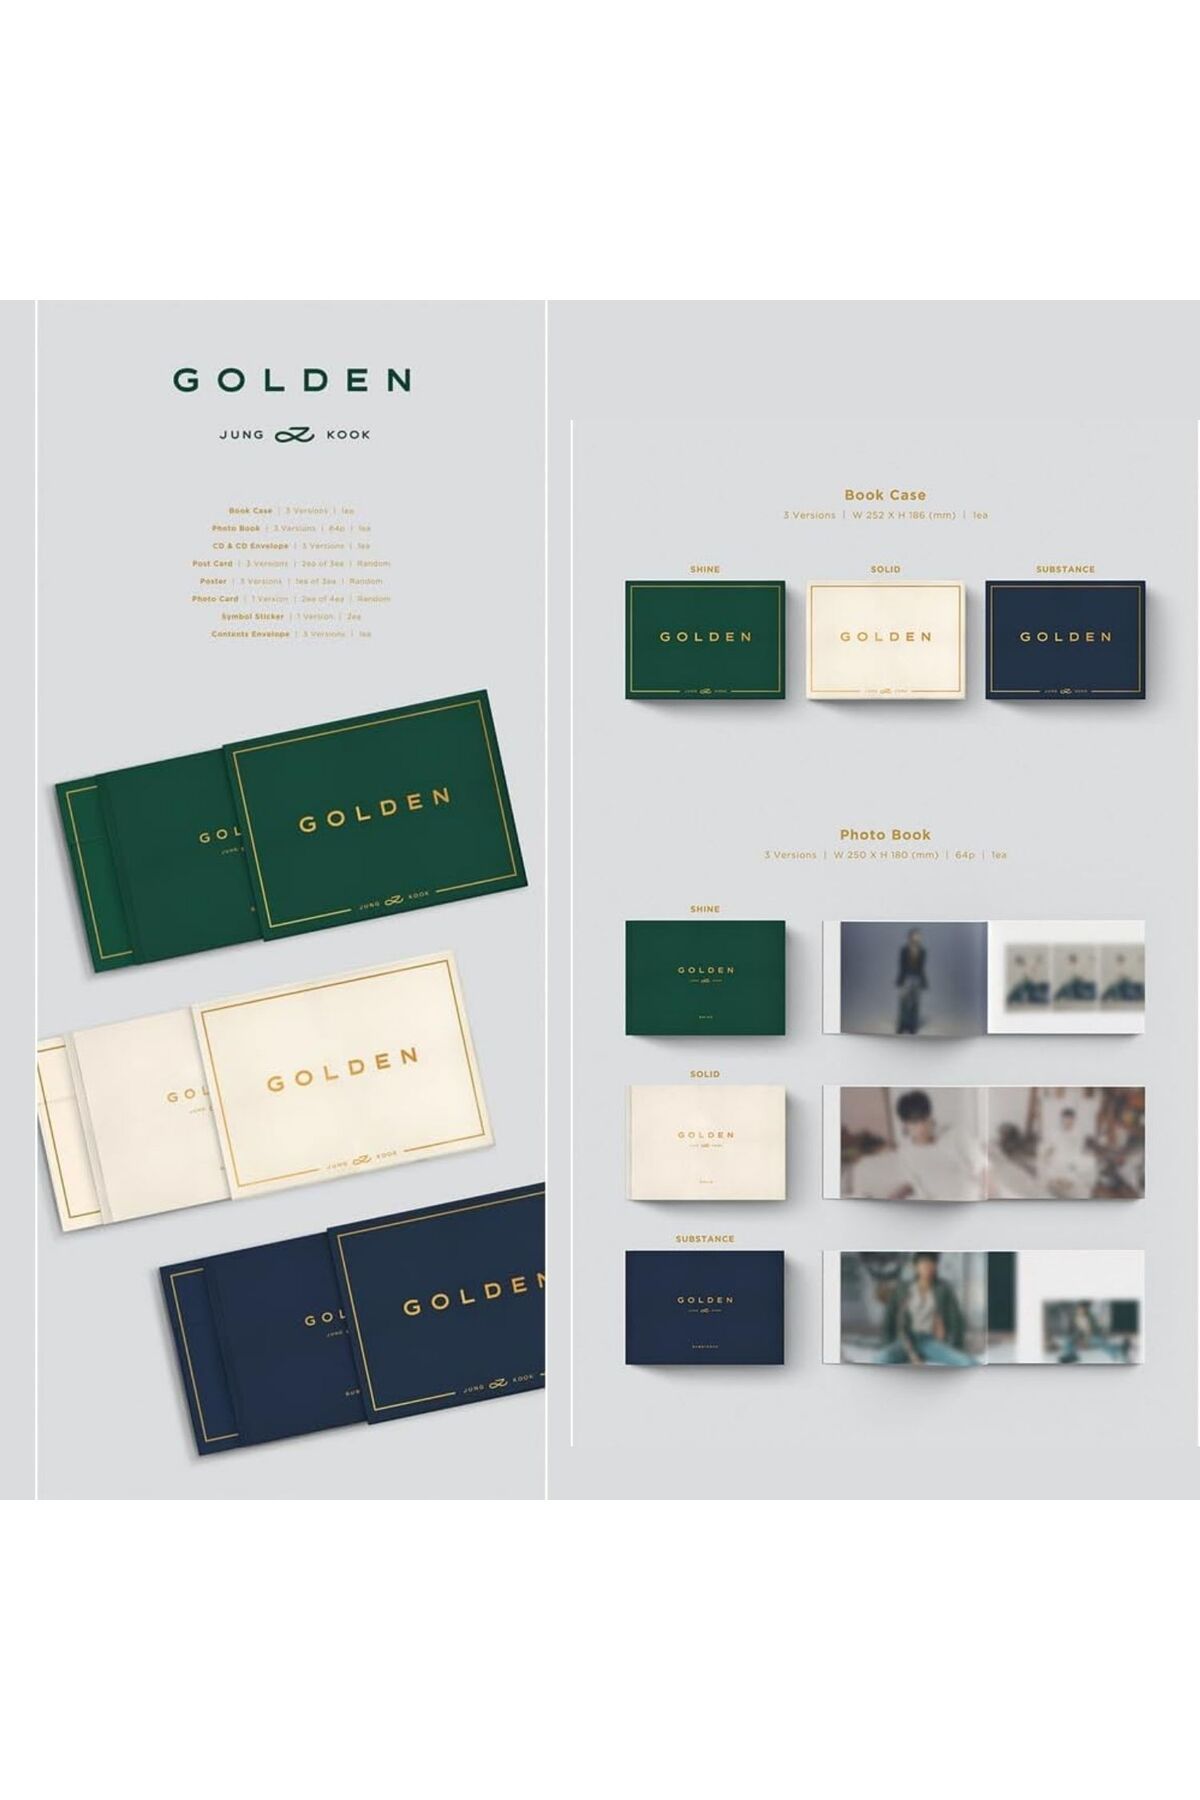 Kpop Dünyasi Jung Kook – GOLDEN (Substance Ver.) Fiyatı, Yorumları -  Trendyol